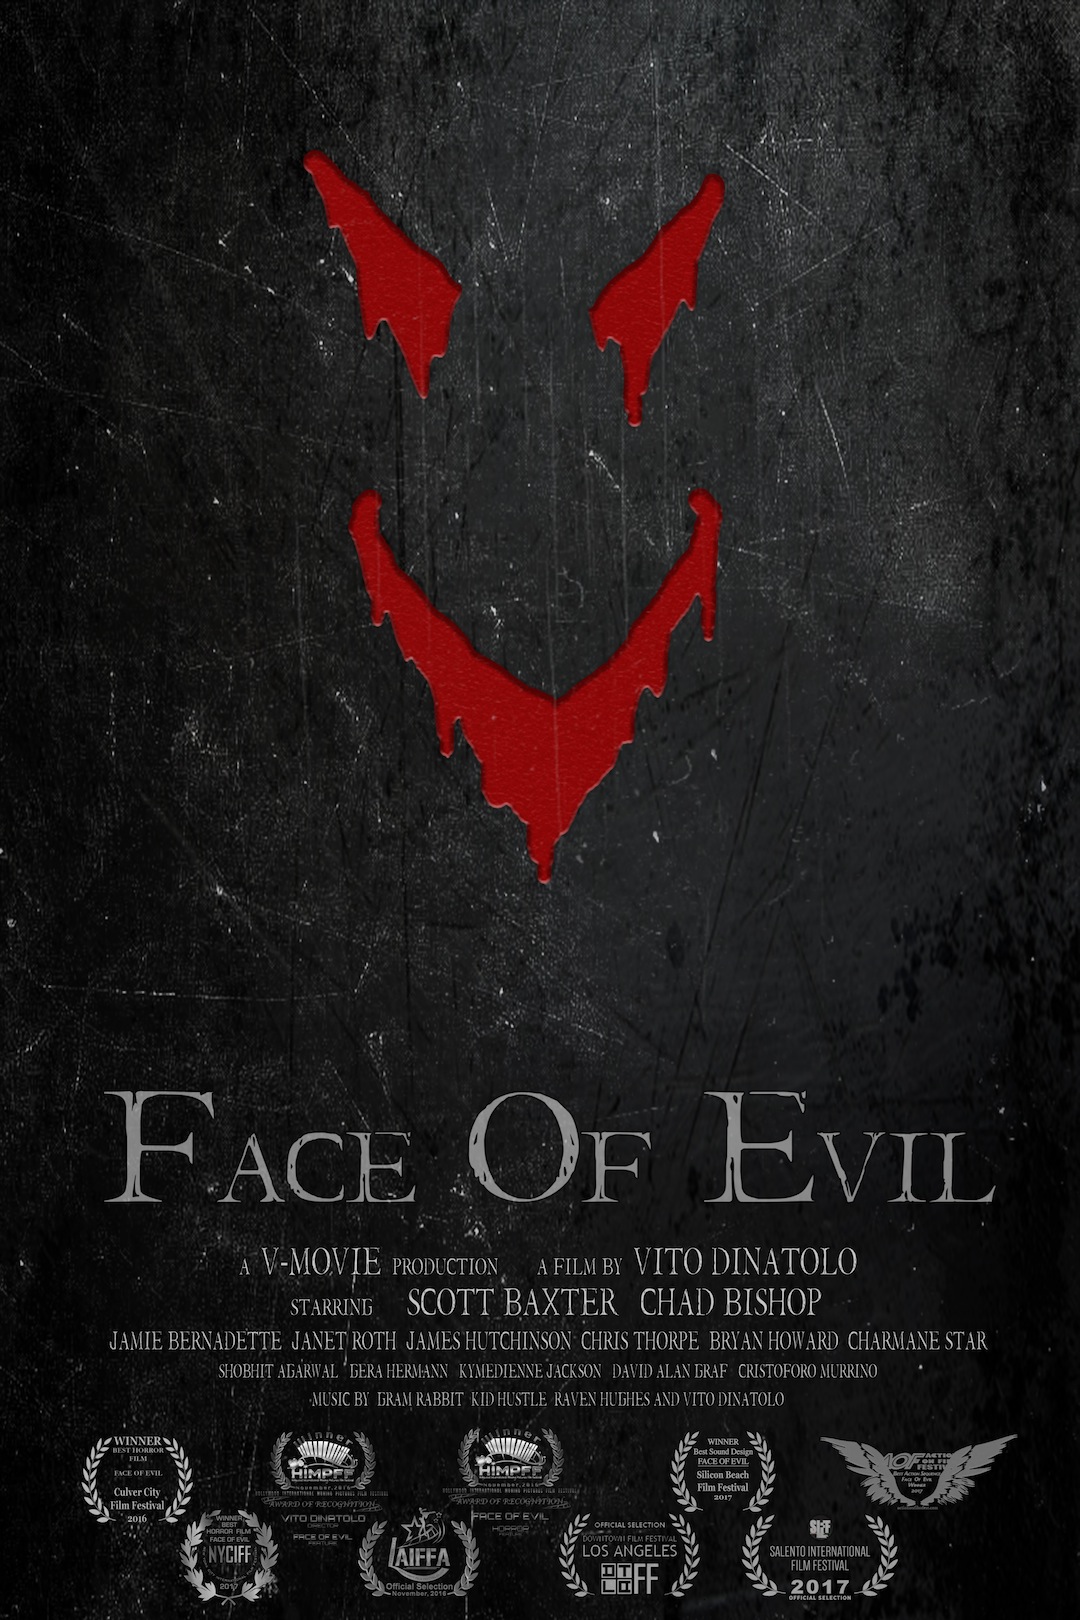 Nonton film Face of Evil layarkaca21 indoxx1 ganool online streaming terbaru